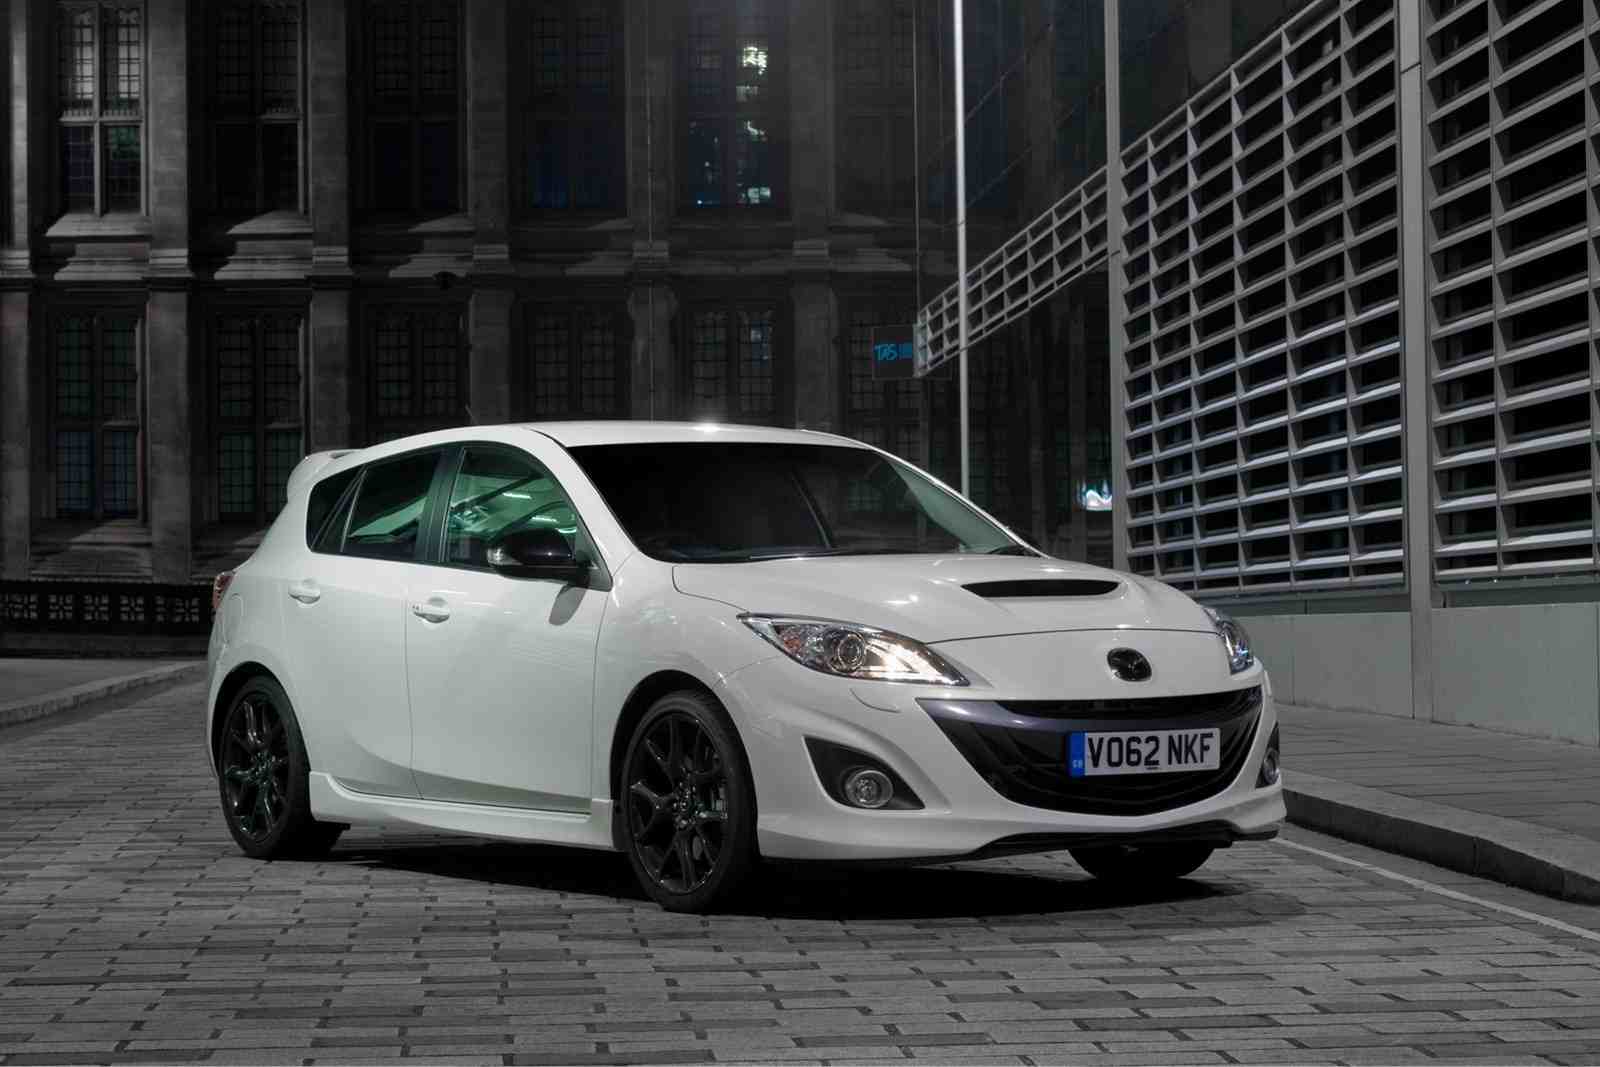 «Заряженная» Mazda3 появится в 2015 году